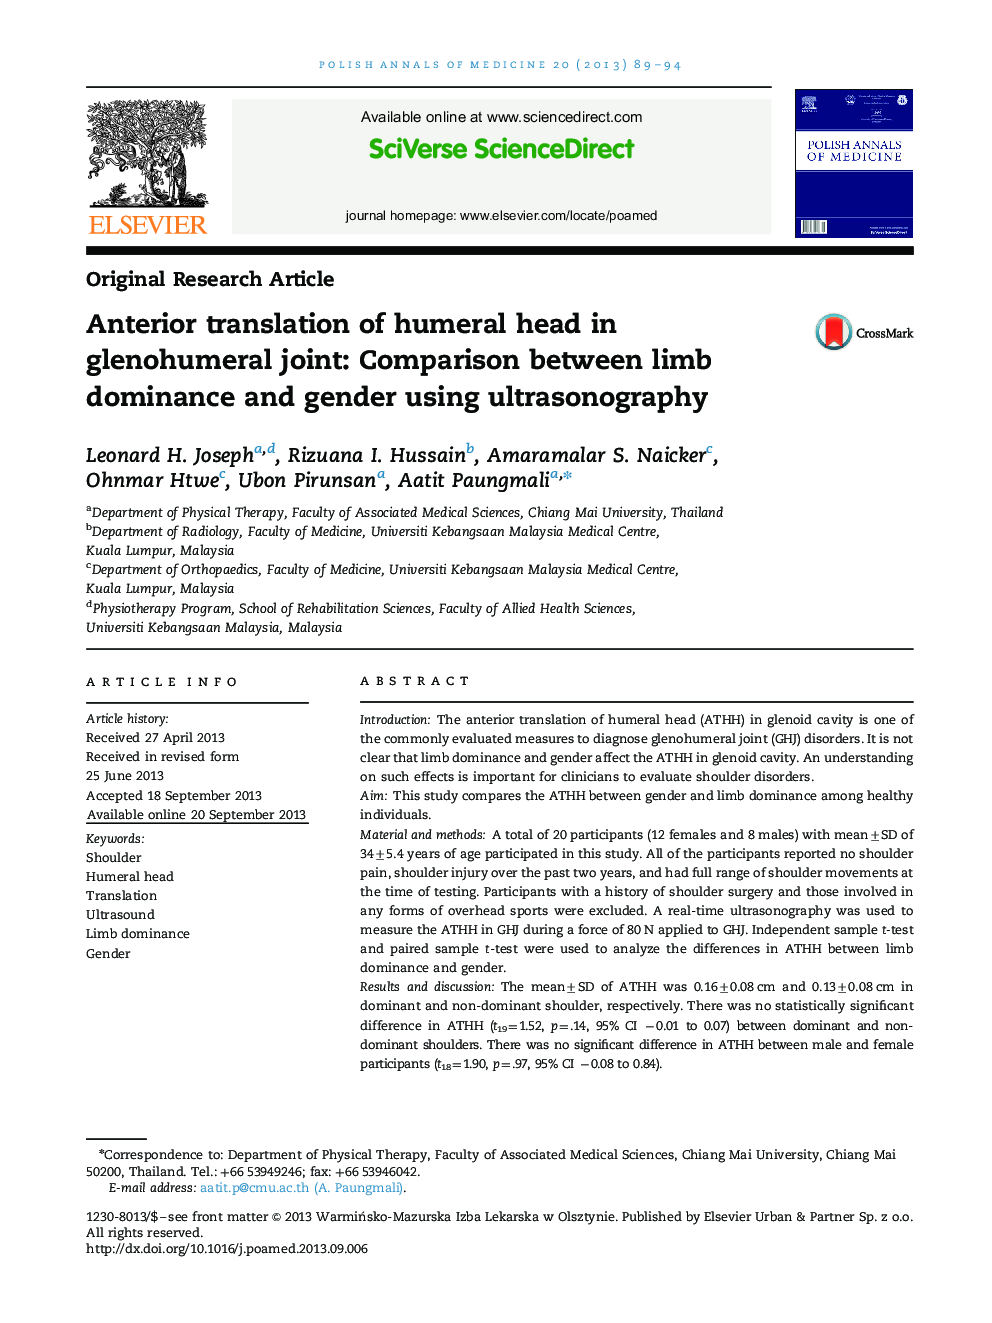 ترجمه قدامی سر استخوان بازو در مفصل گلنوهومرال: مقایسه بین تسلط اندام و جنسیت با استفاده از سونوگرافی